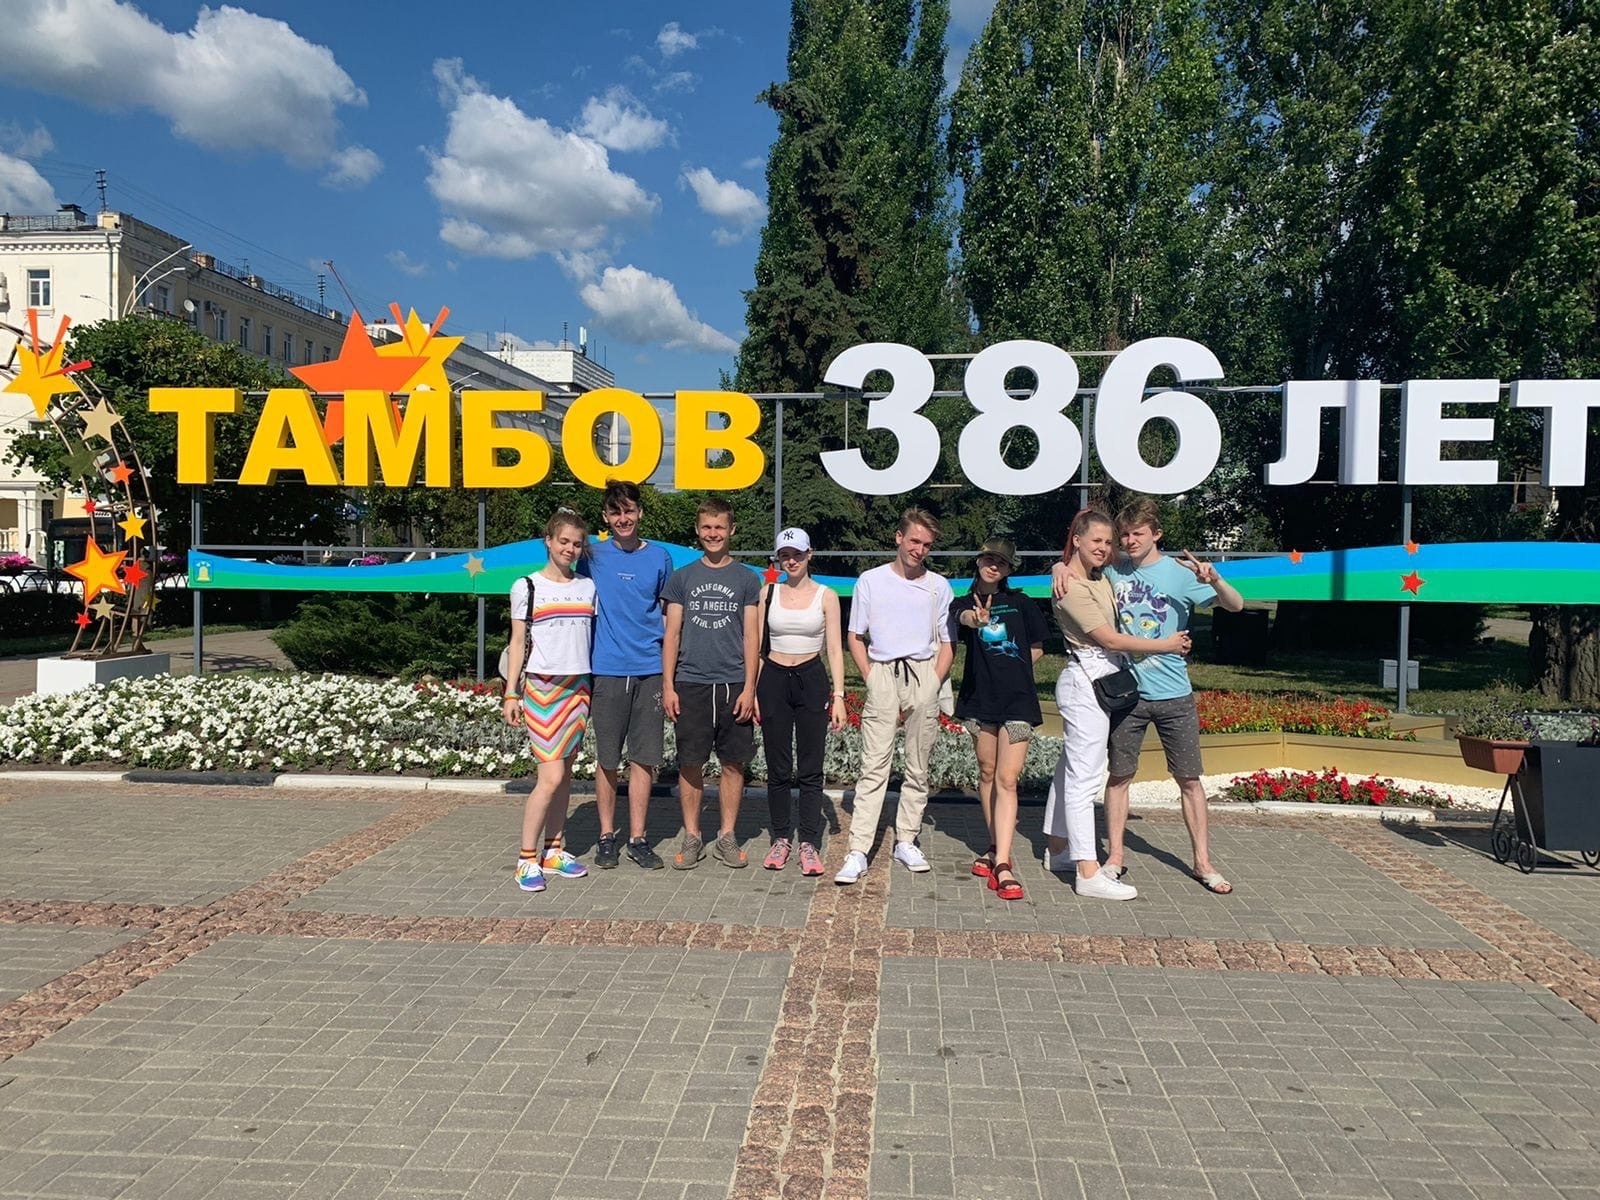 Державинский и Московский госуниверситет спорта и туризма обменялись студентами по программе молодежного и студенческого туризма фото анонса